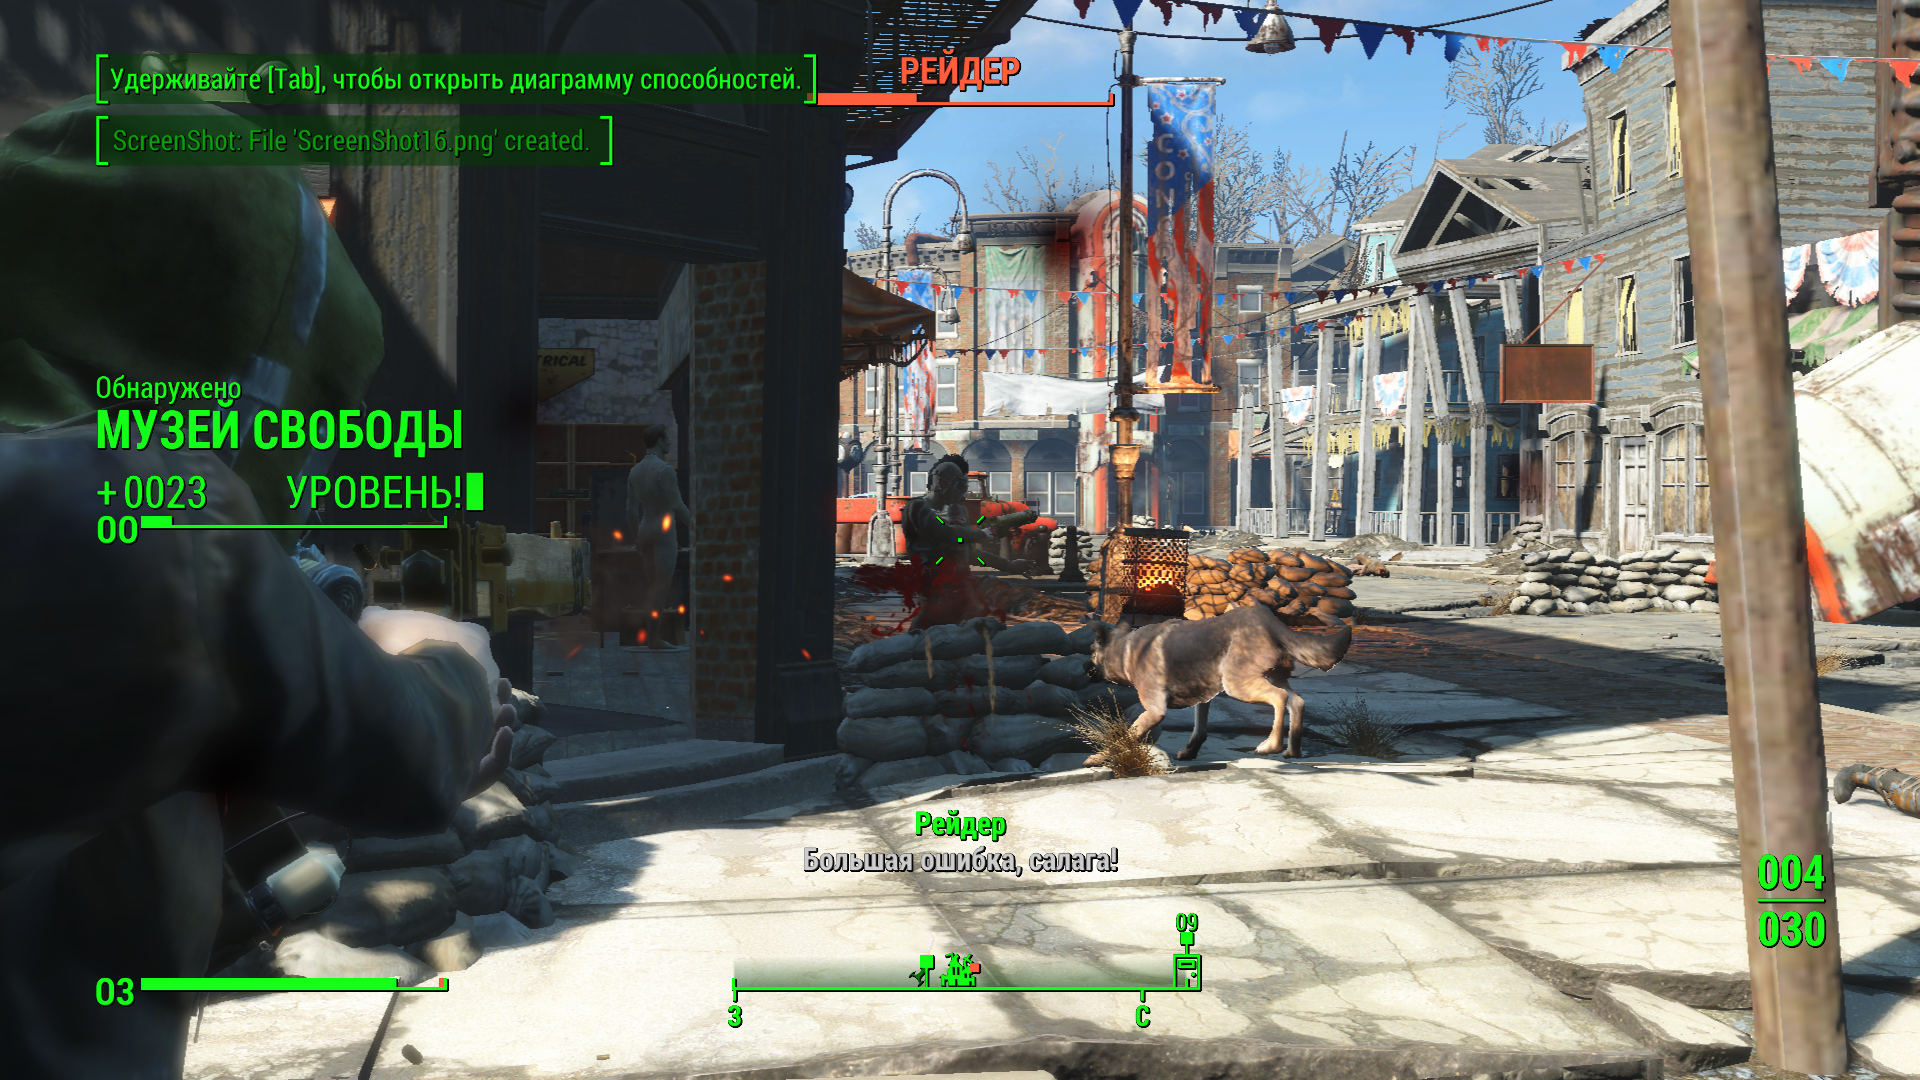 Полный обзор игры Fallout 4 от iGamesWorld: Почему Fallout 4 хорошее РПГ?